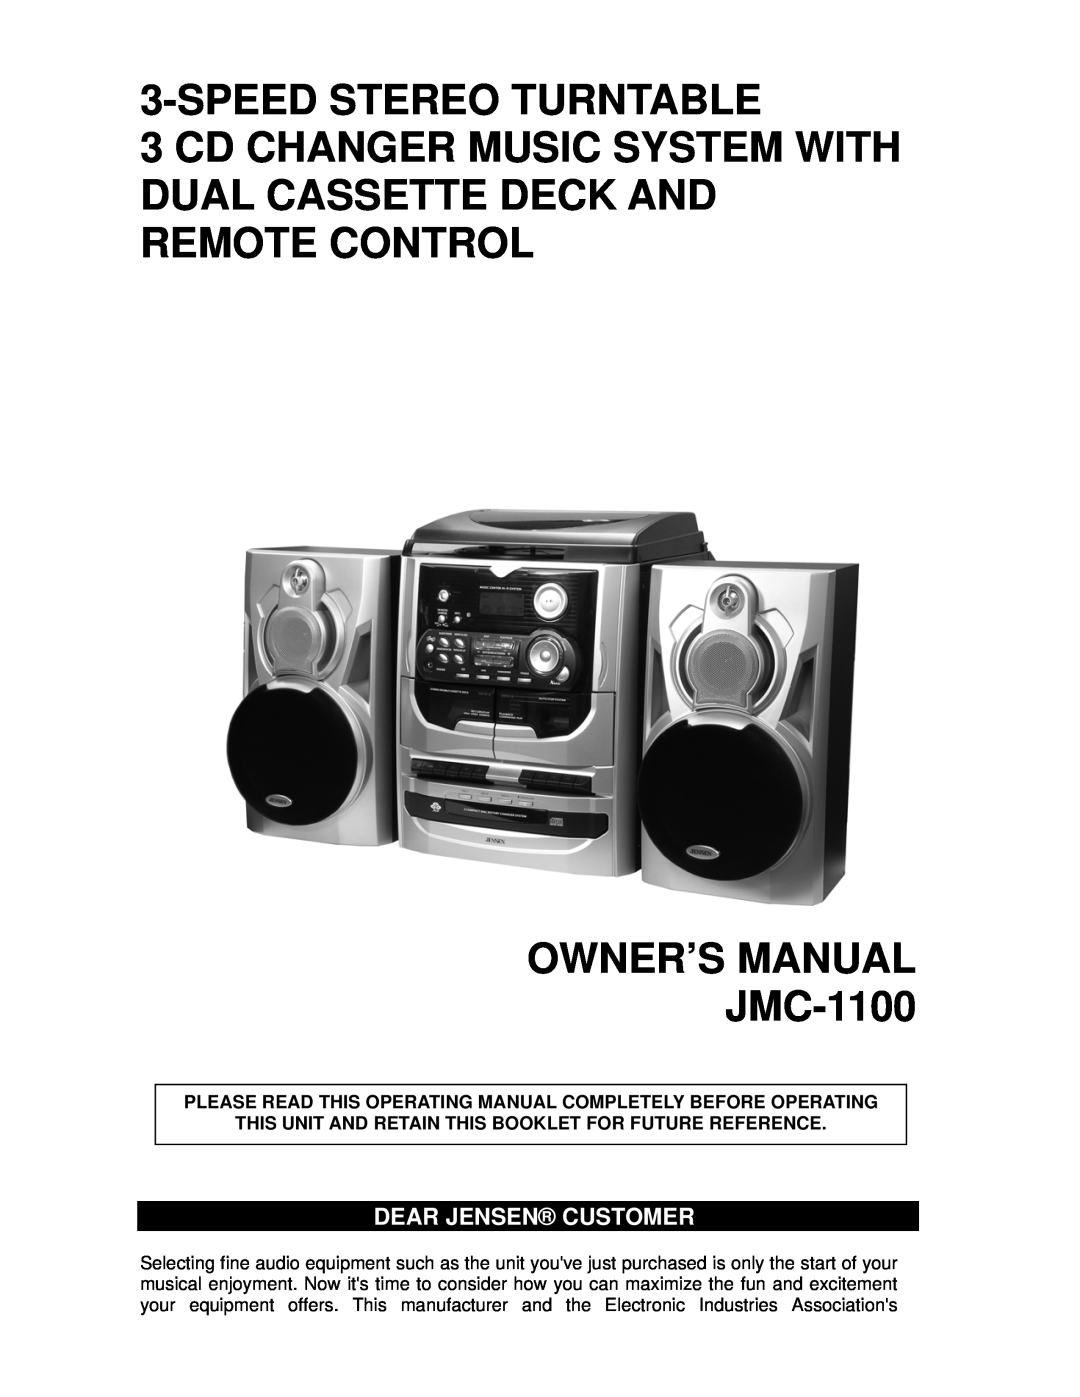 Jensen JMC-1100 owner manual Dear Jensen Customer, Speedstereo Turntable 